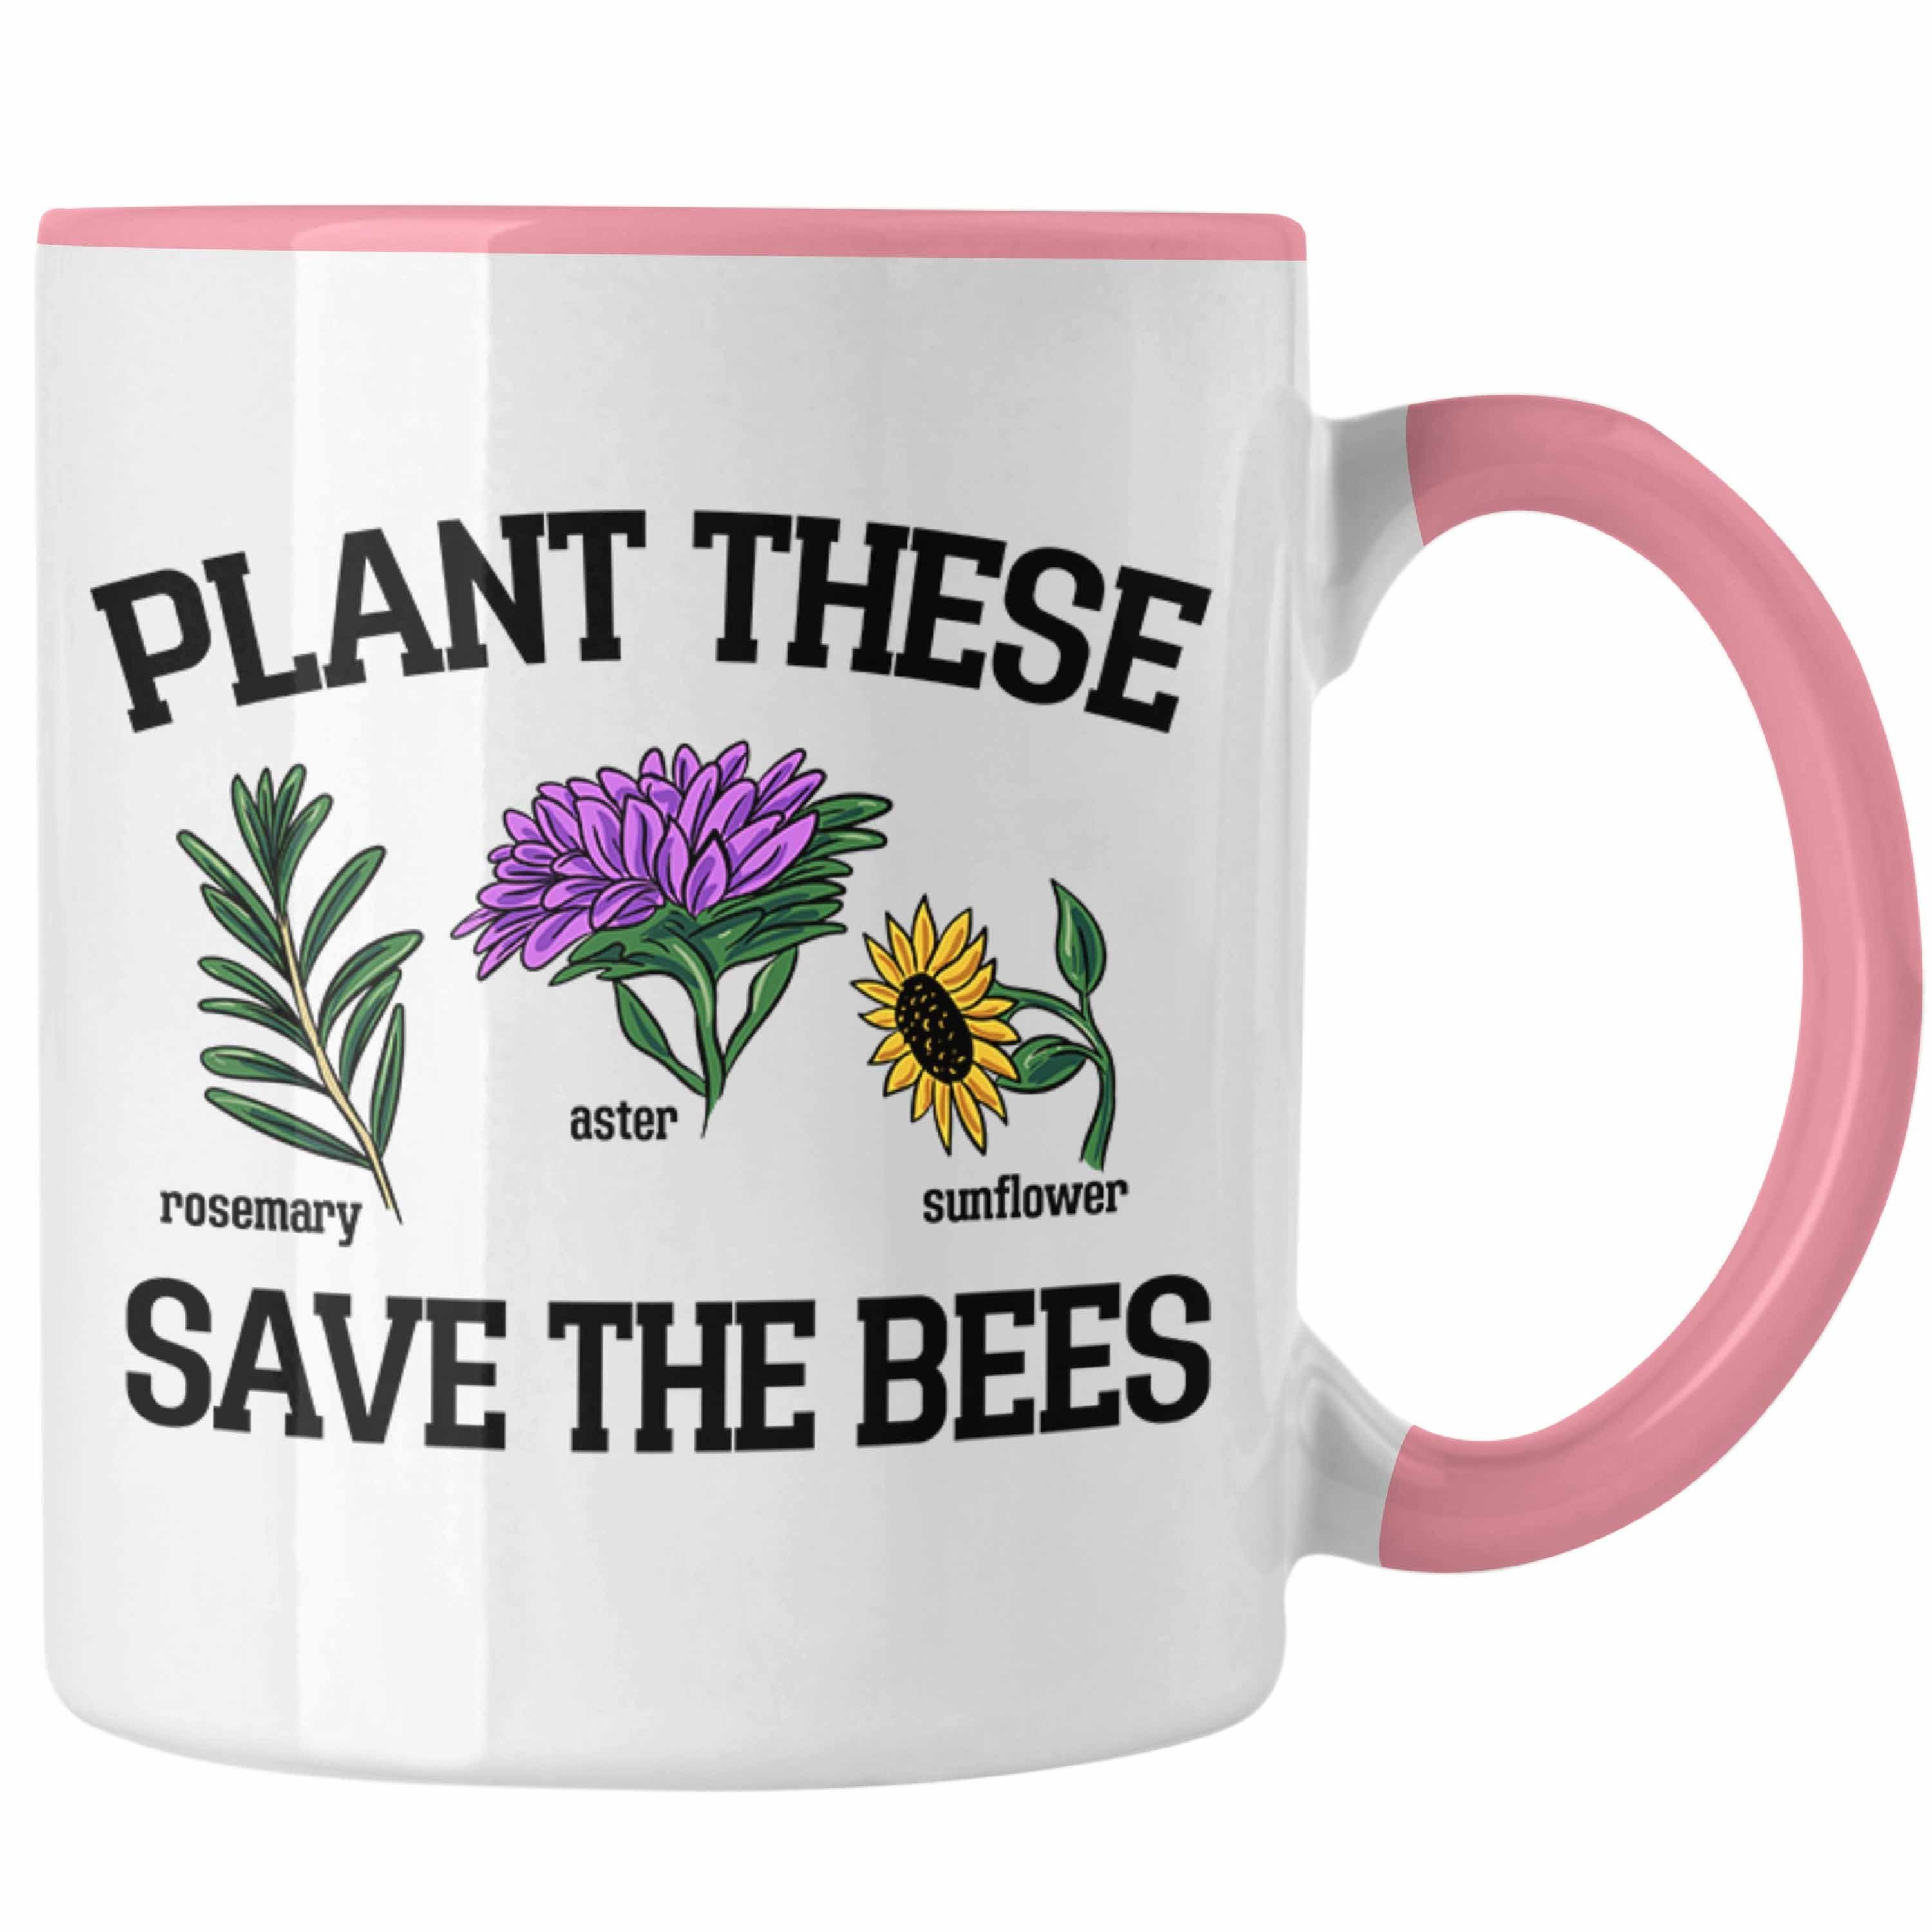 Trendation Tasse Lustige Tasse Geschenk Save Bees Bienenliebhaber Plant The These für Rosa